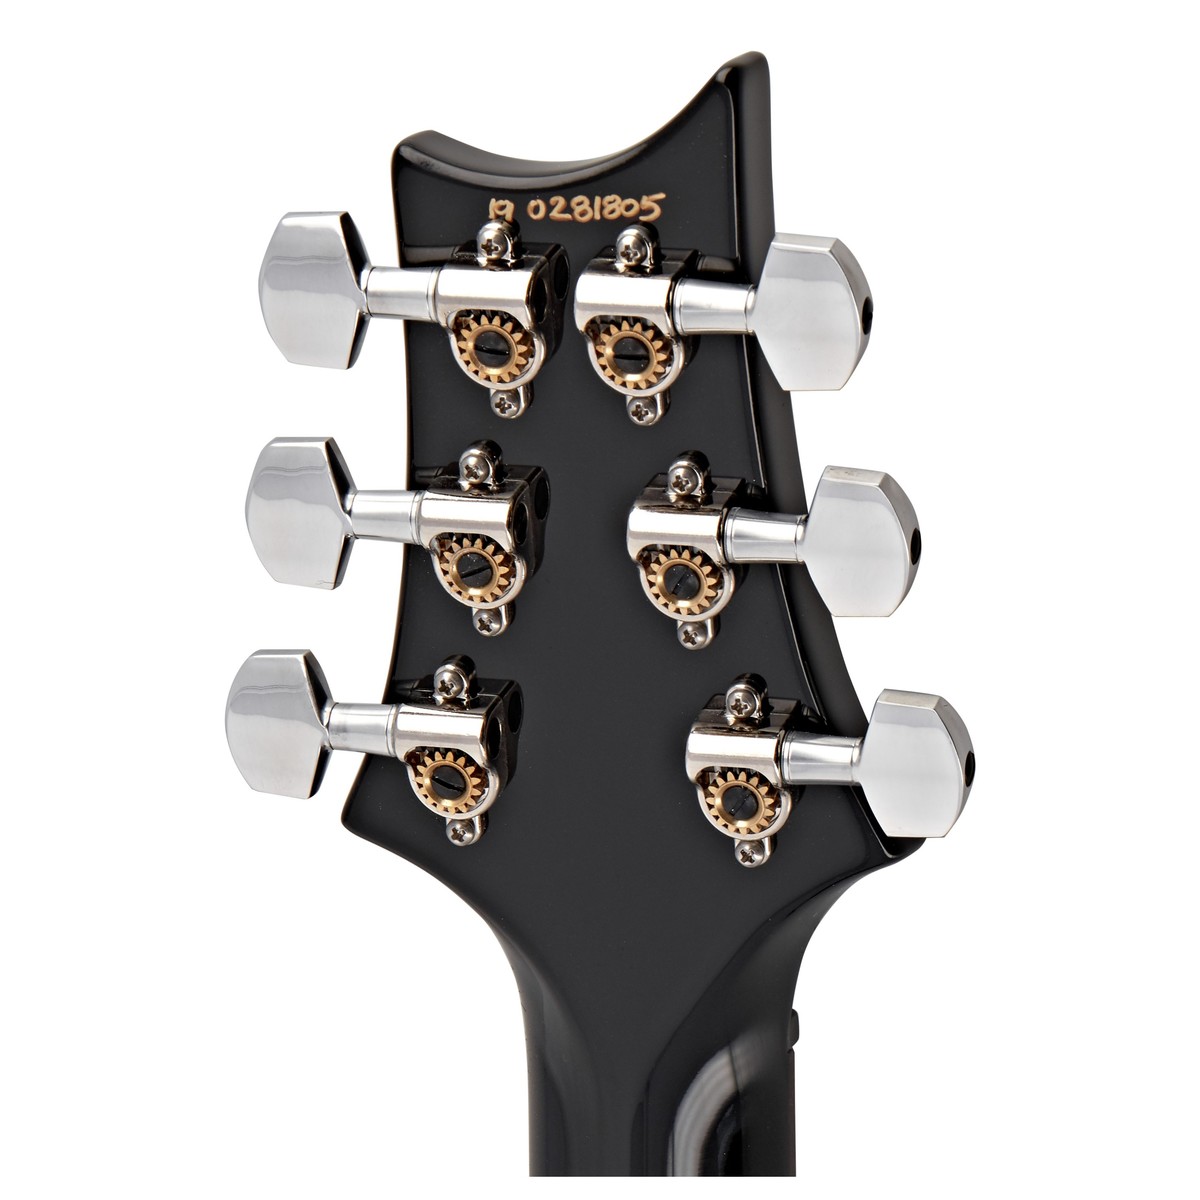 Prs Custom 24 Usa 2h Trem Rw - Orange Tiger - Guitarra eléctrica de doble corte. - Variation 6